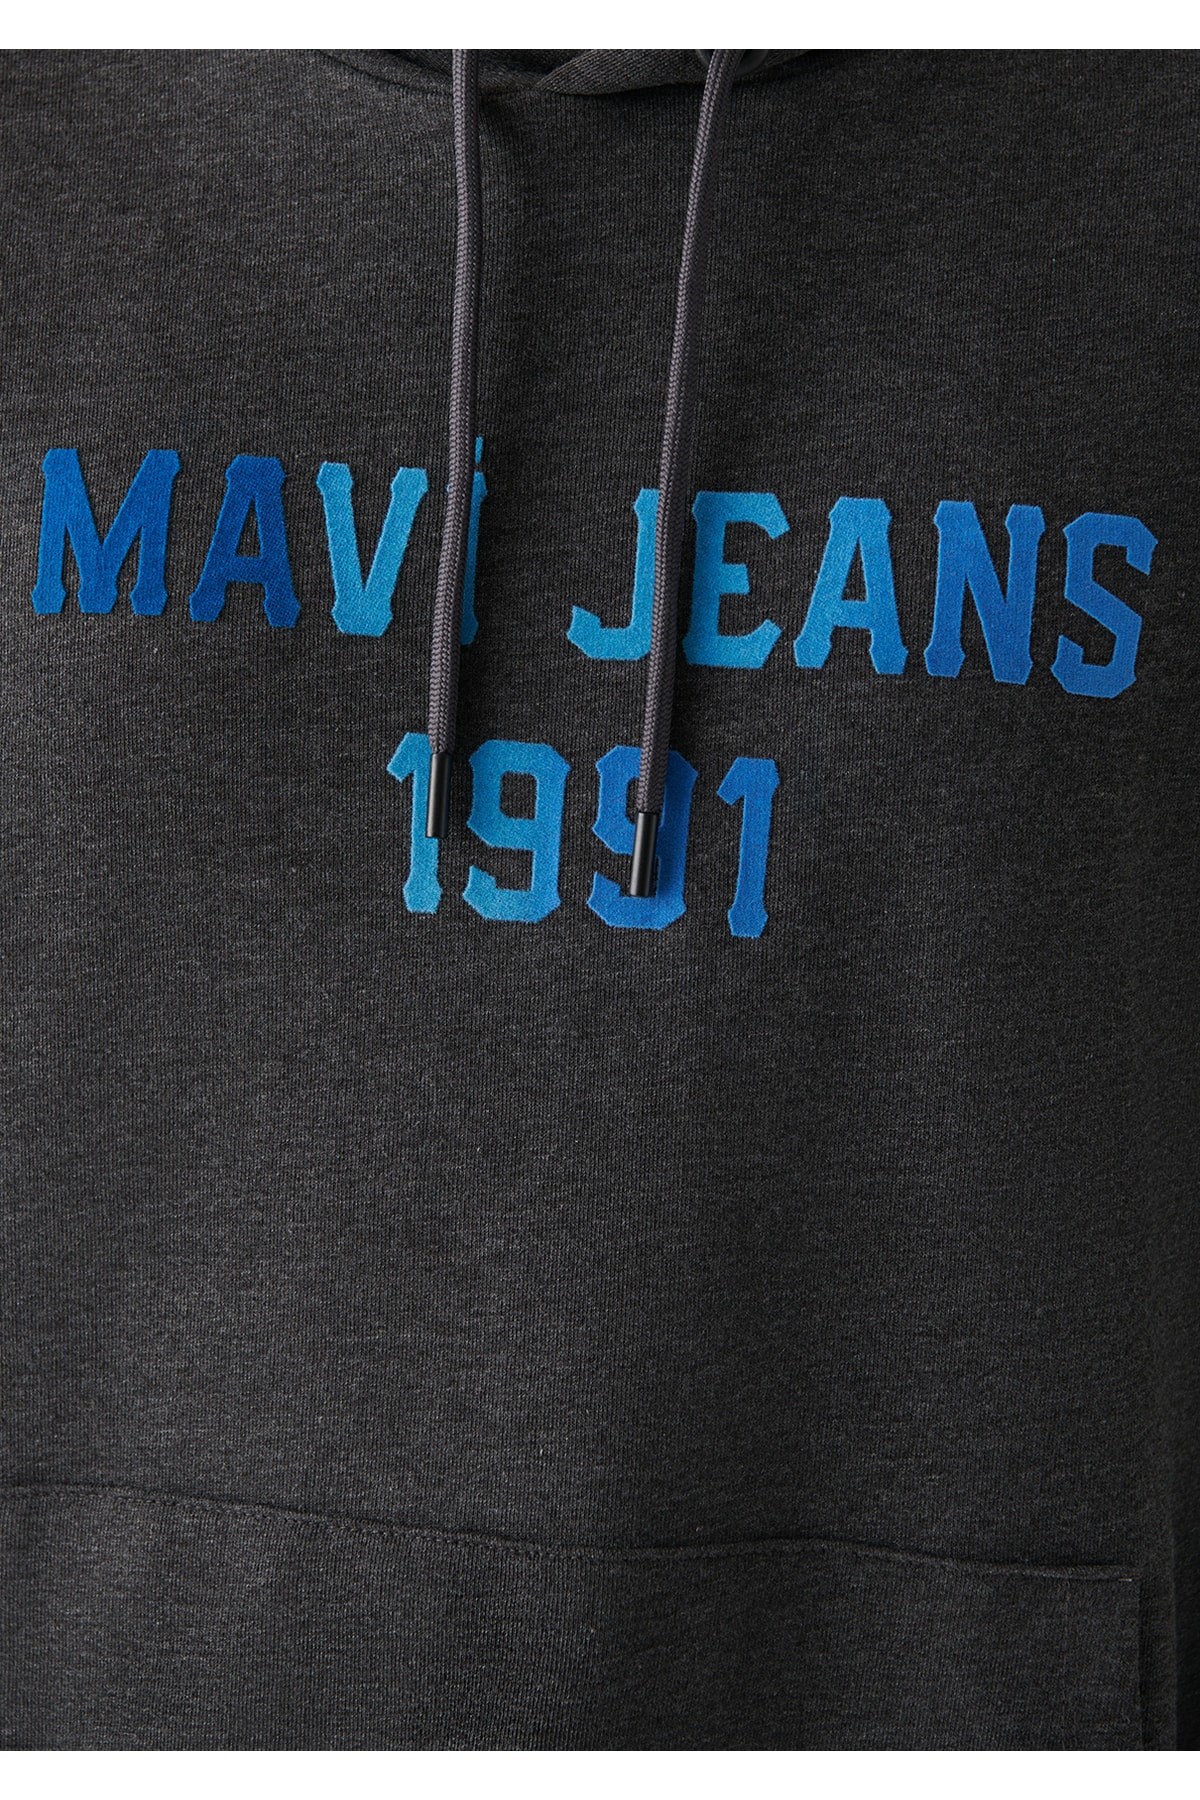 Mavi Jeans Erkek S-Shirt 067150-35059 